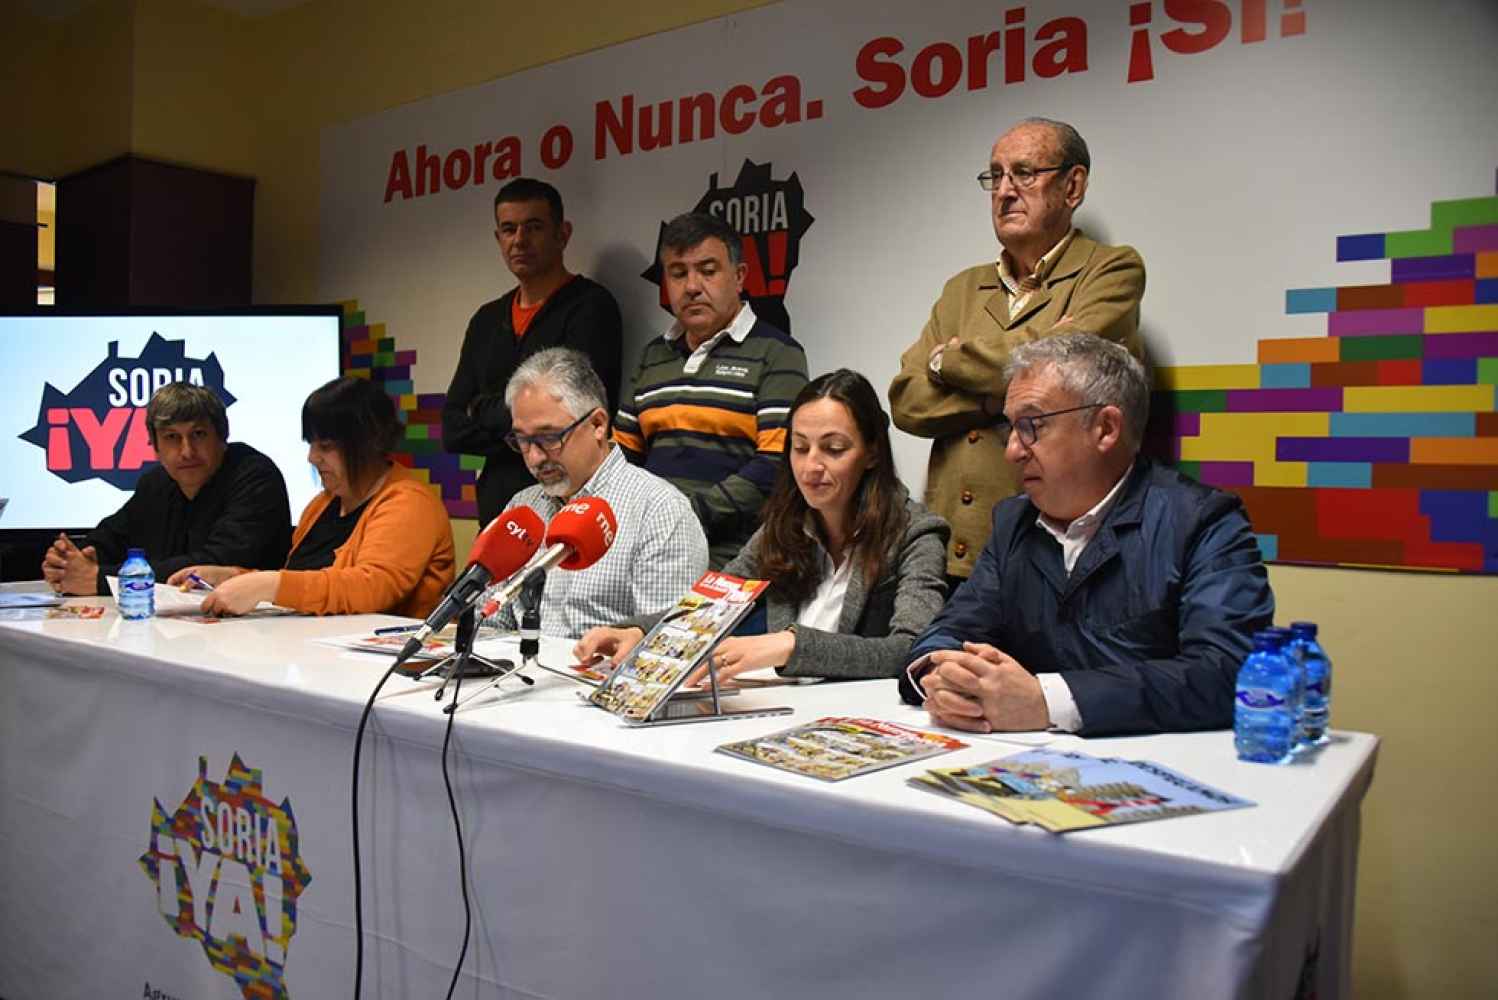 Los alcaldes no contestan a reunión solicitada por Soria ¡Ya!